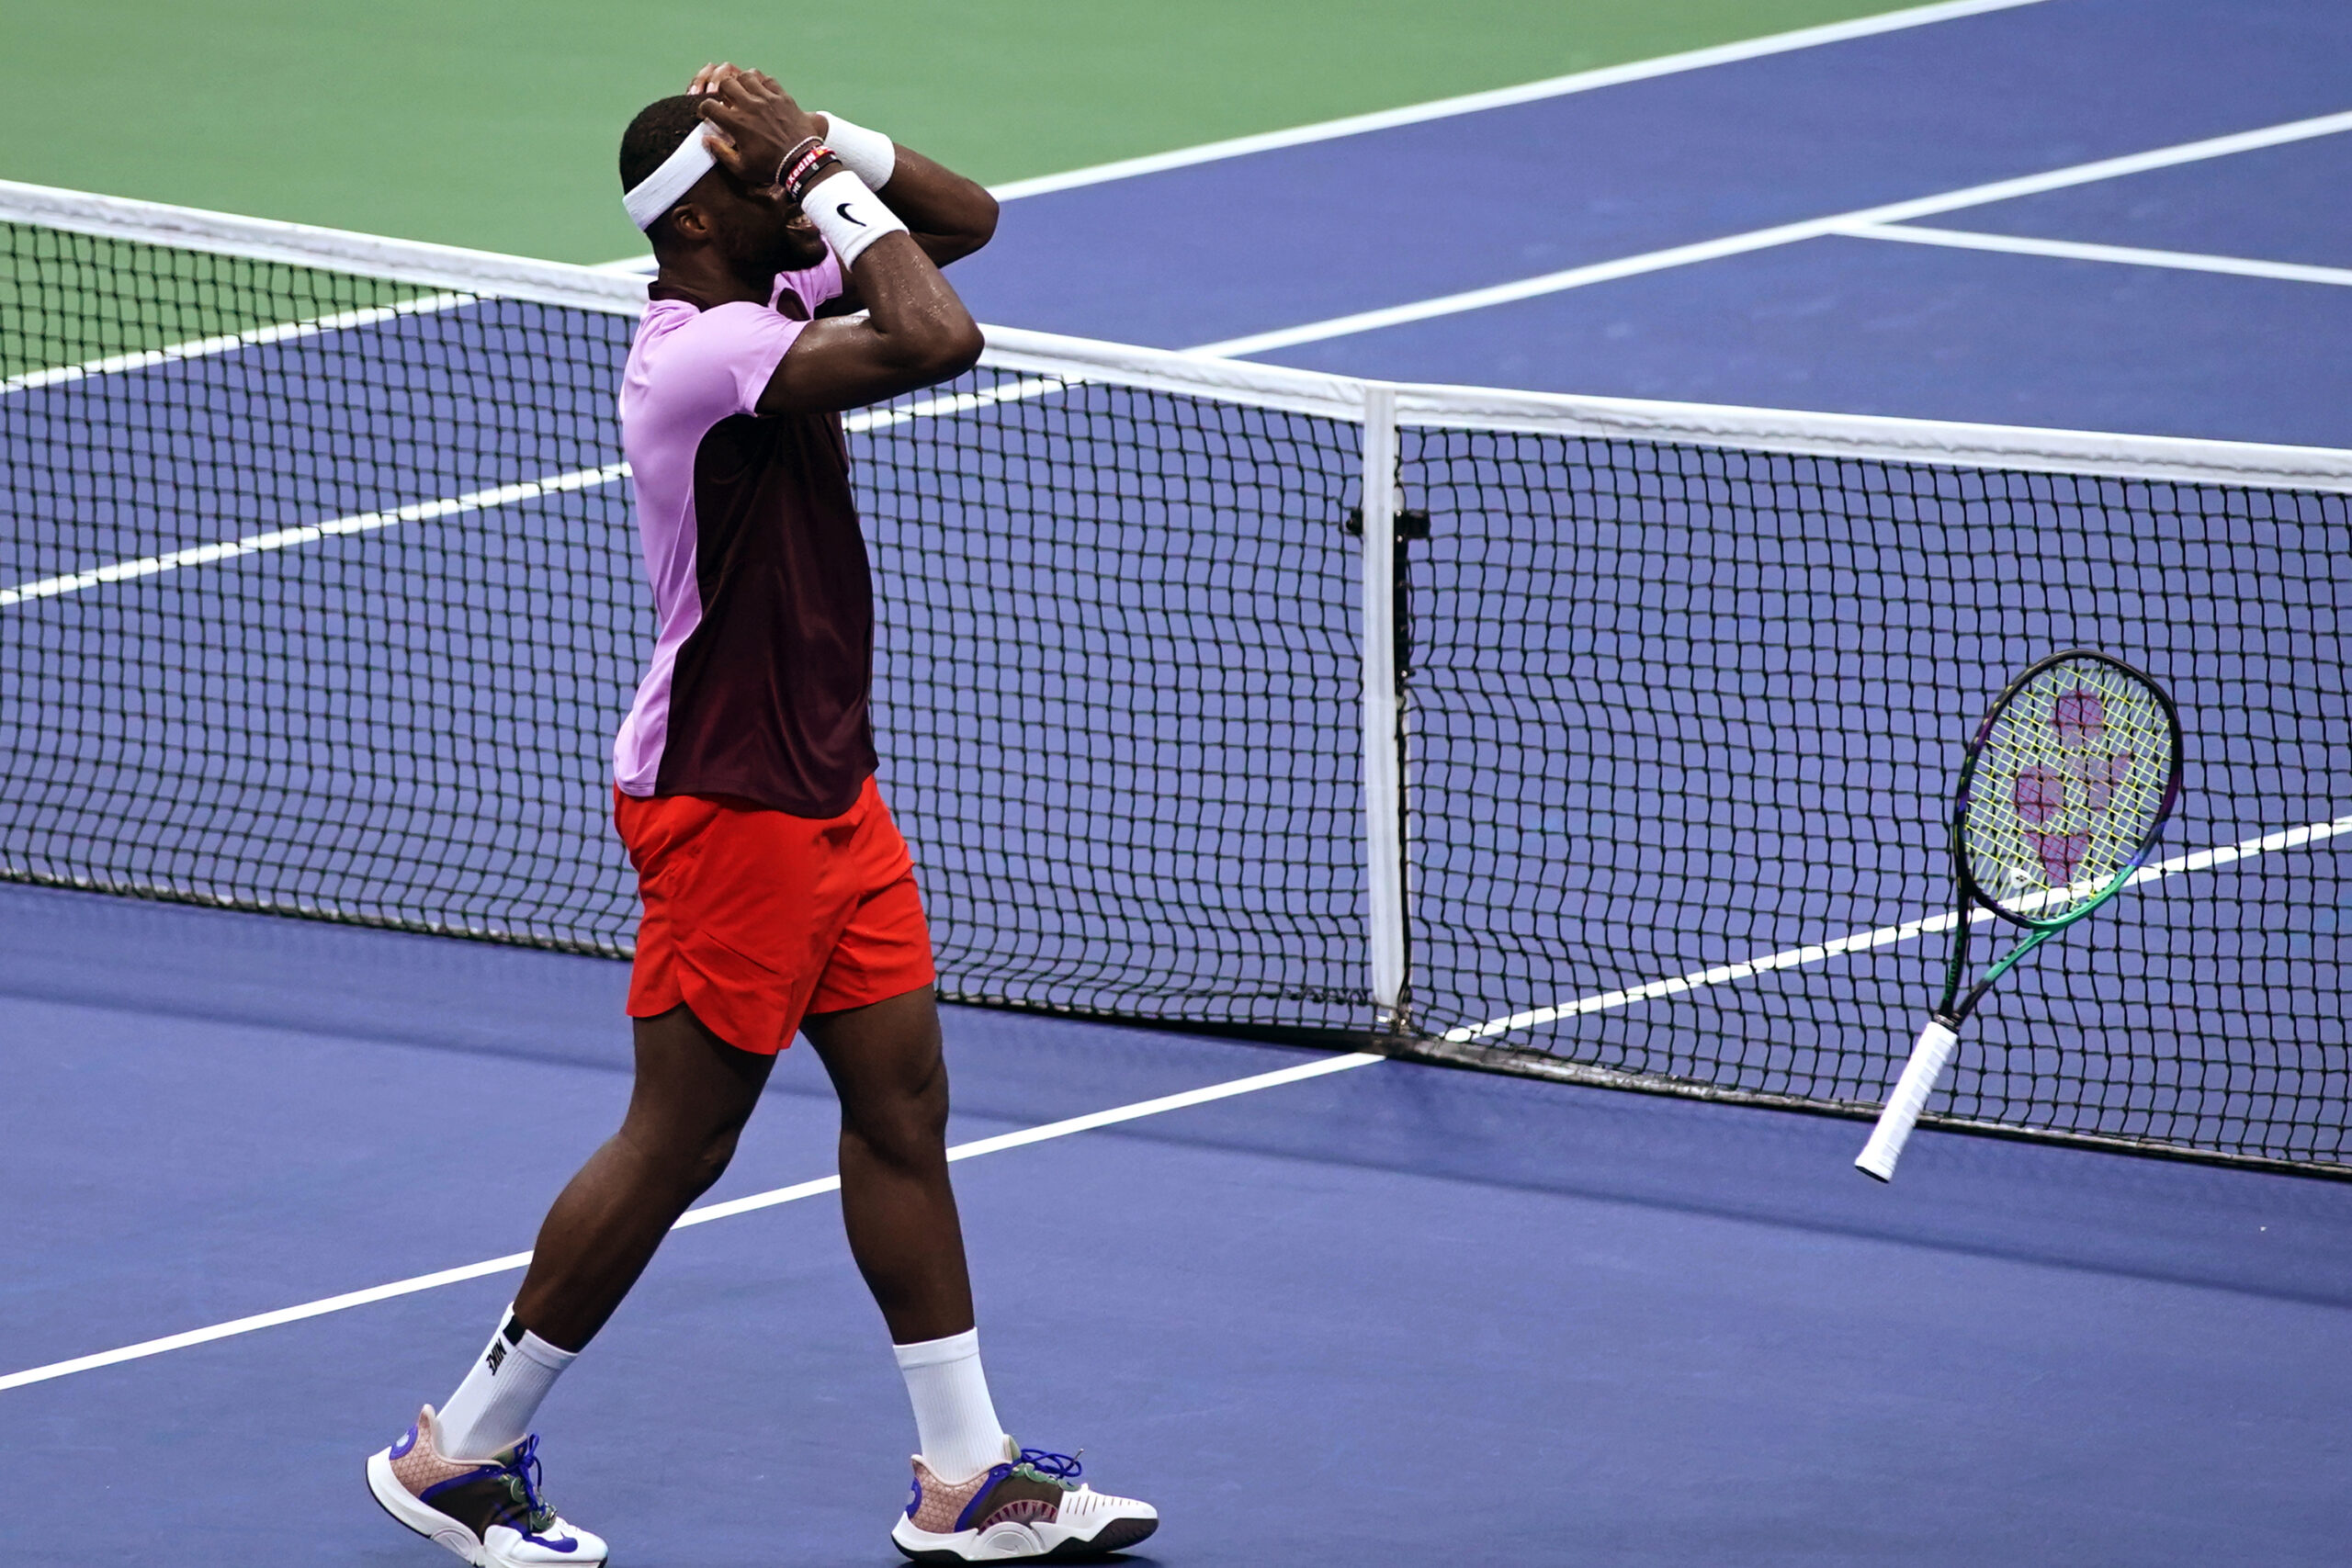 Tiafoe Ends Nadal’s 22-Match Slam Streak in US Open 4th Rd